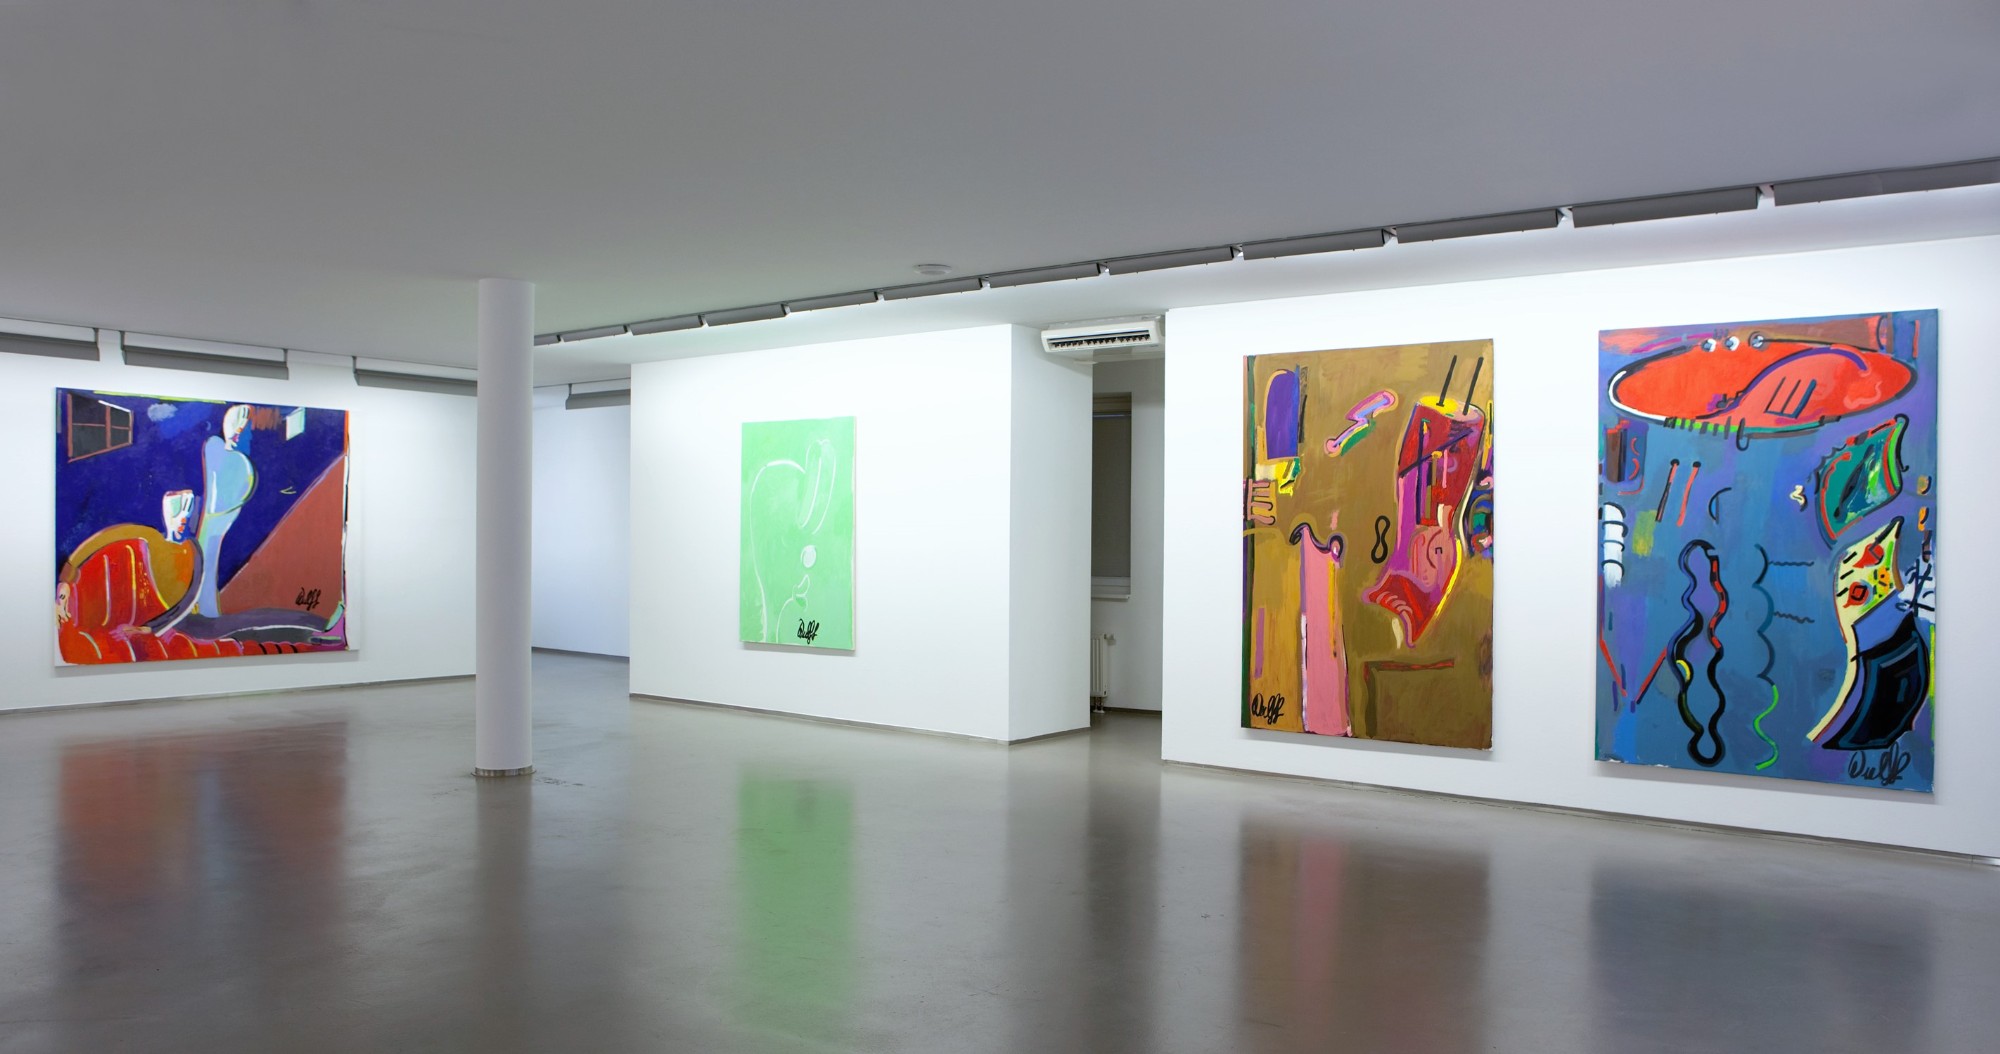 Ulrich Wulff, Schon wieder neue Bilder, Exhibition view, 2010